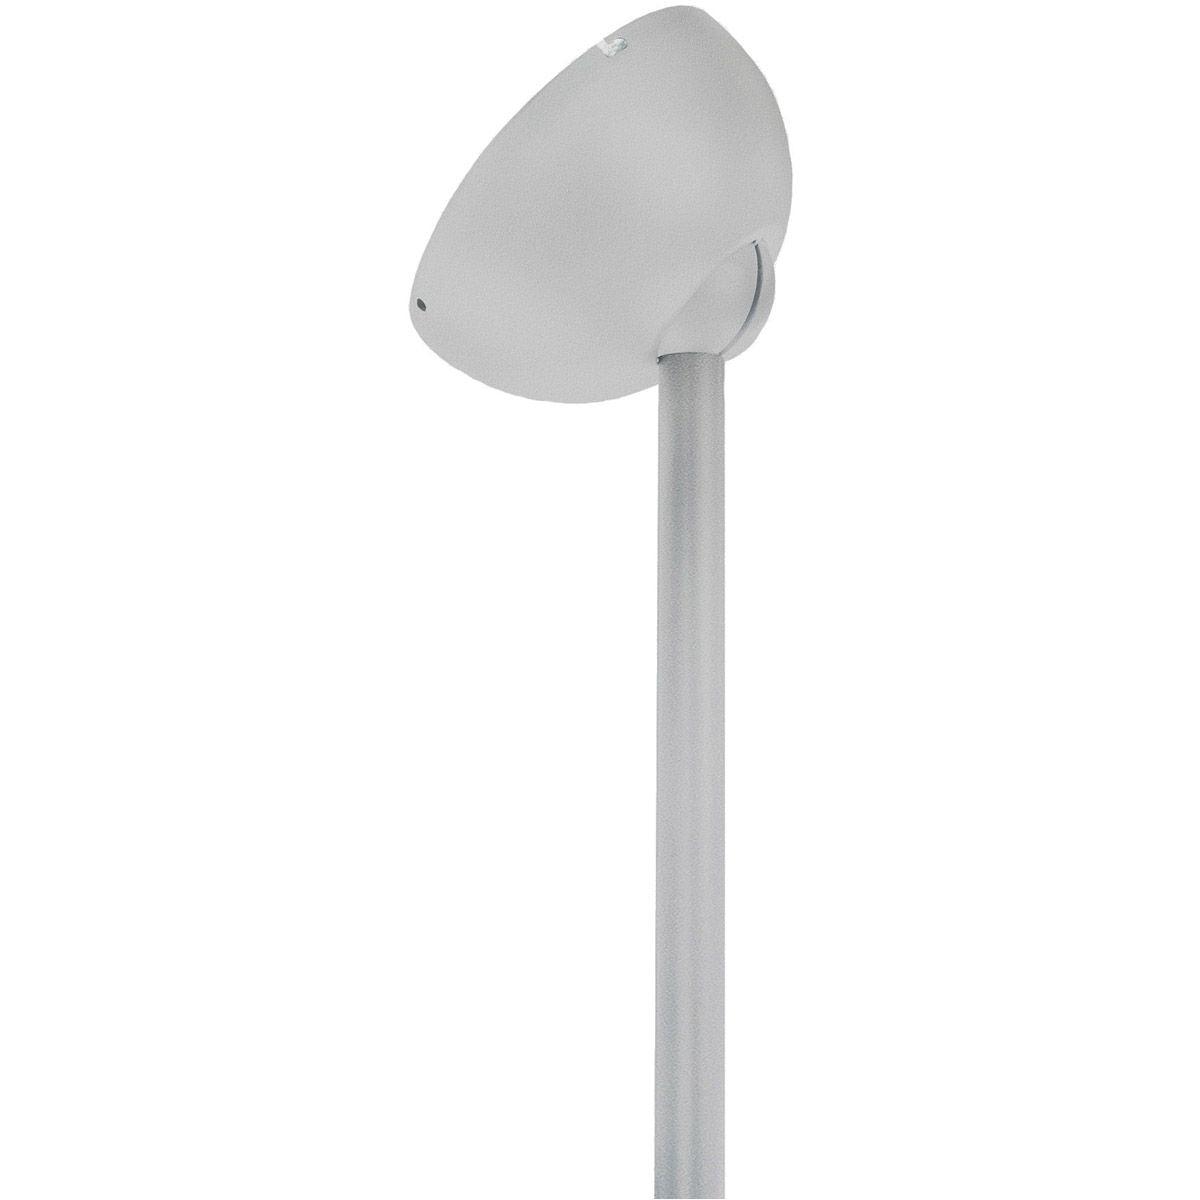 Slope Ceiling Fan Adapter Kit